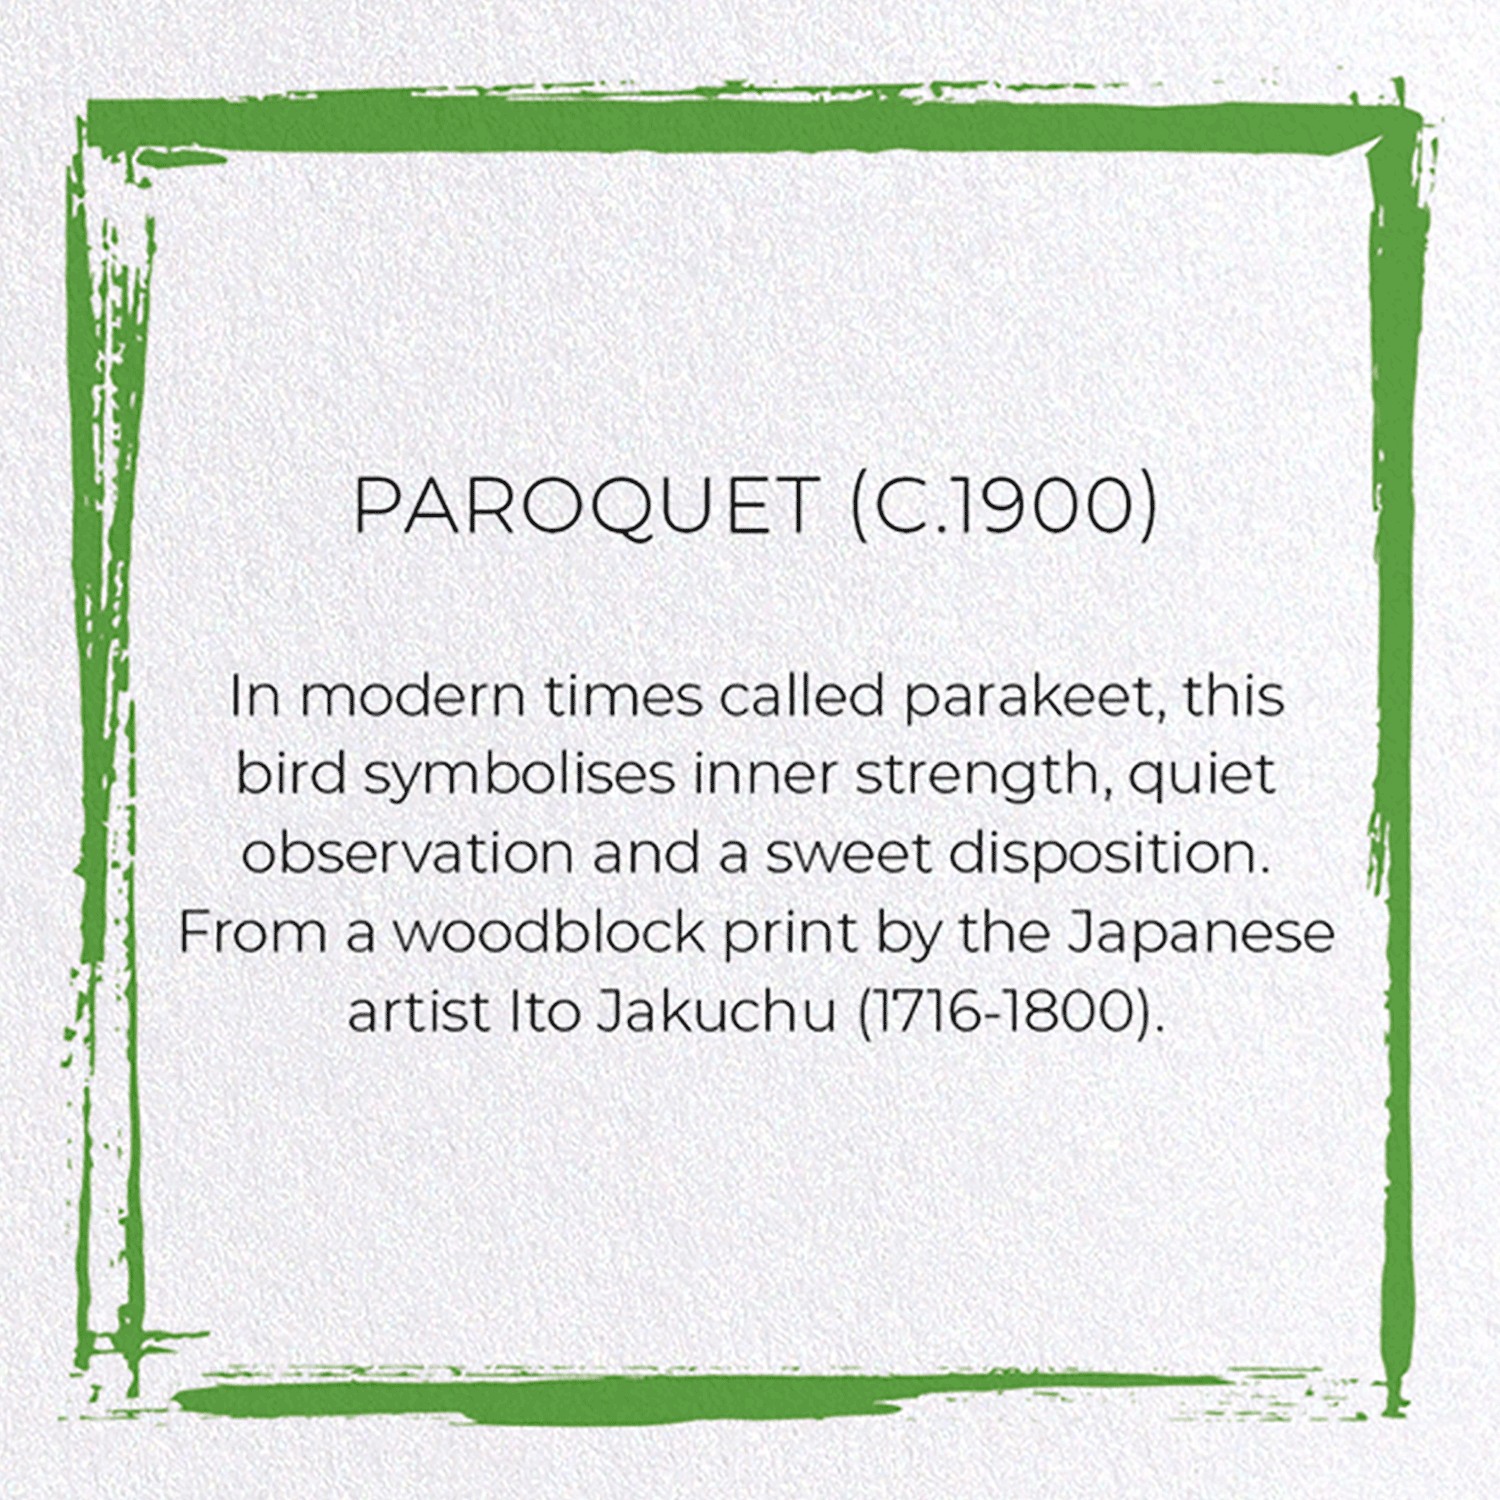 PAROQUET (C.1900)